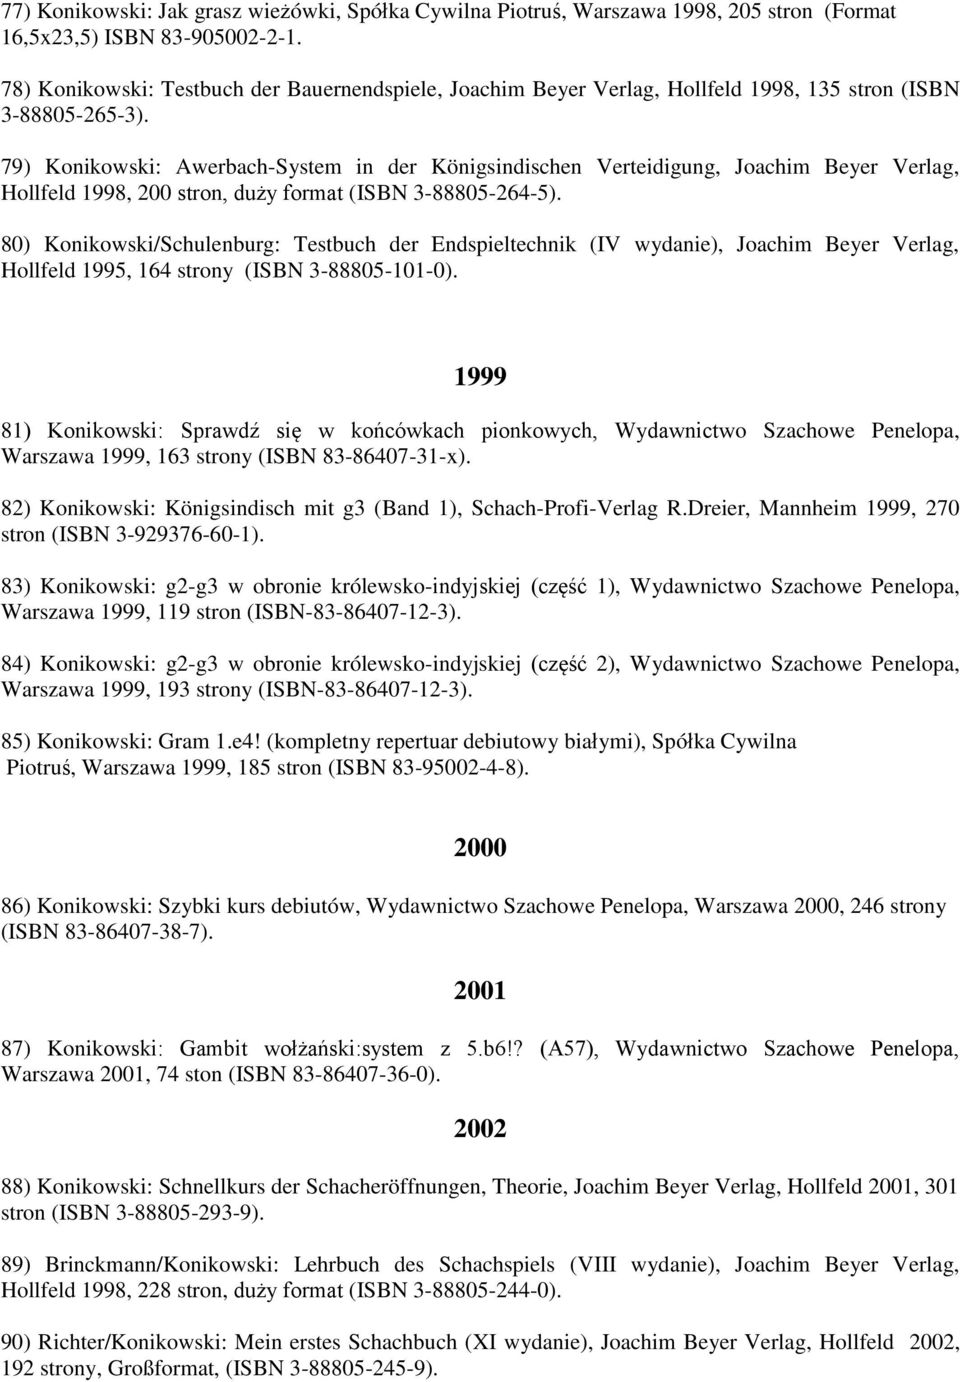 79) Konikowski: Awerbach-System in der Königsindischen Verteidigung, Joachim Beyer Verlag, Hollfeld 1998, 200 stron, duży format (ISBN 3-88805-264-5).